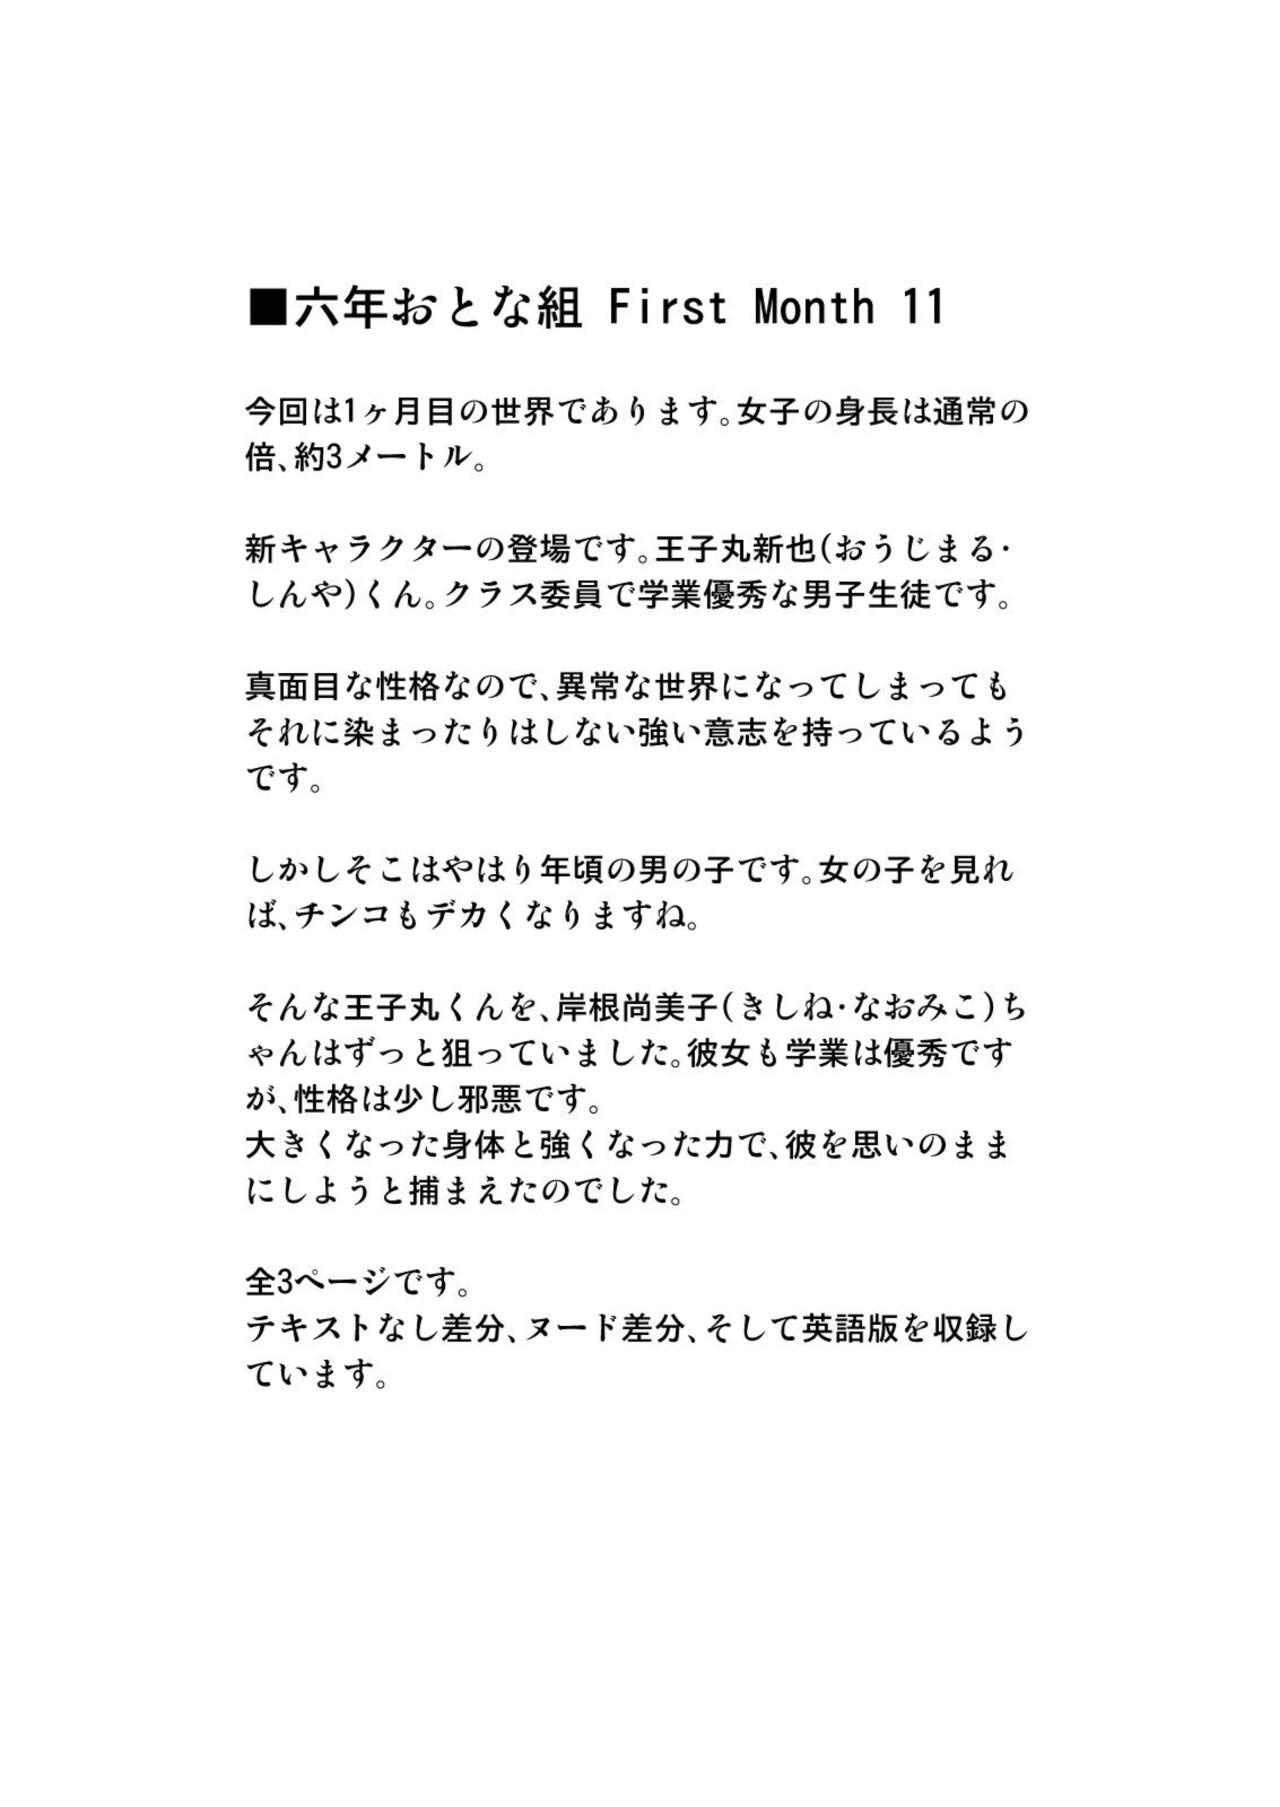 Rokunen Otona-gumi Collection 2022 3